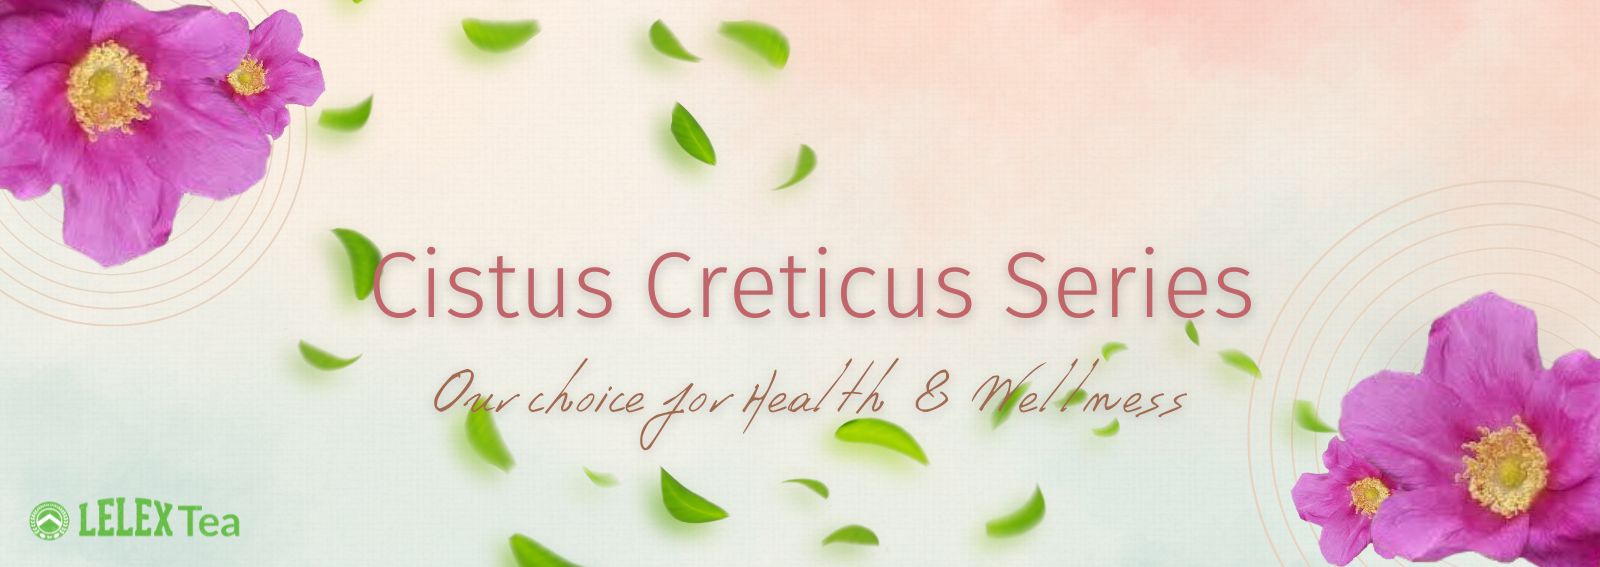 Cistus-creticus-series-Incanus-hoary-rock-rose-Health-wellness